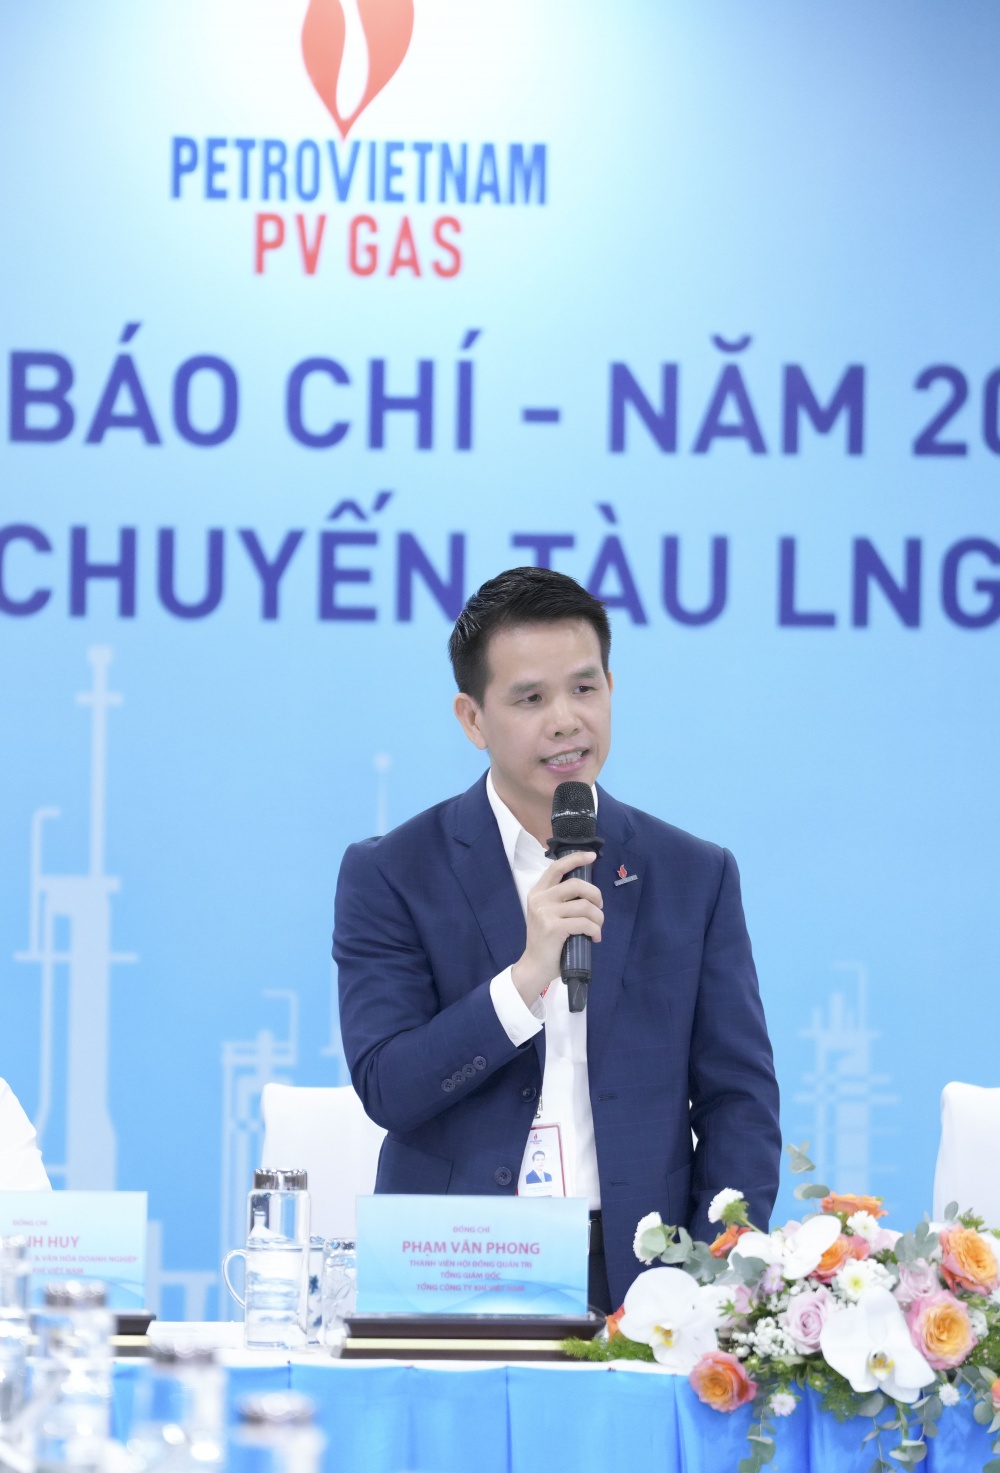 Tổng Giám đốc PV GAS Phạm Văn Phong chia sẻ thông tin về sự kiện quan trọng này của PV GAS cũng như ngành năng lượng Việt Nam